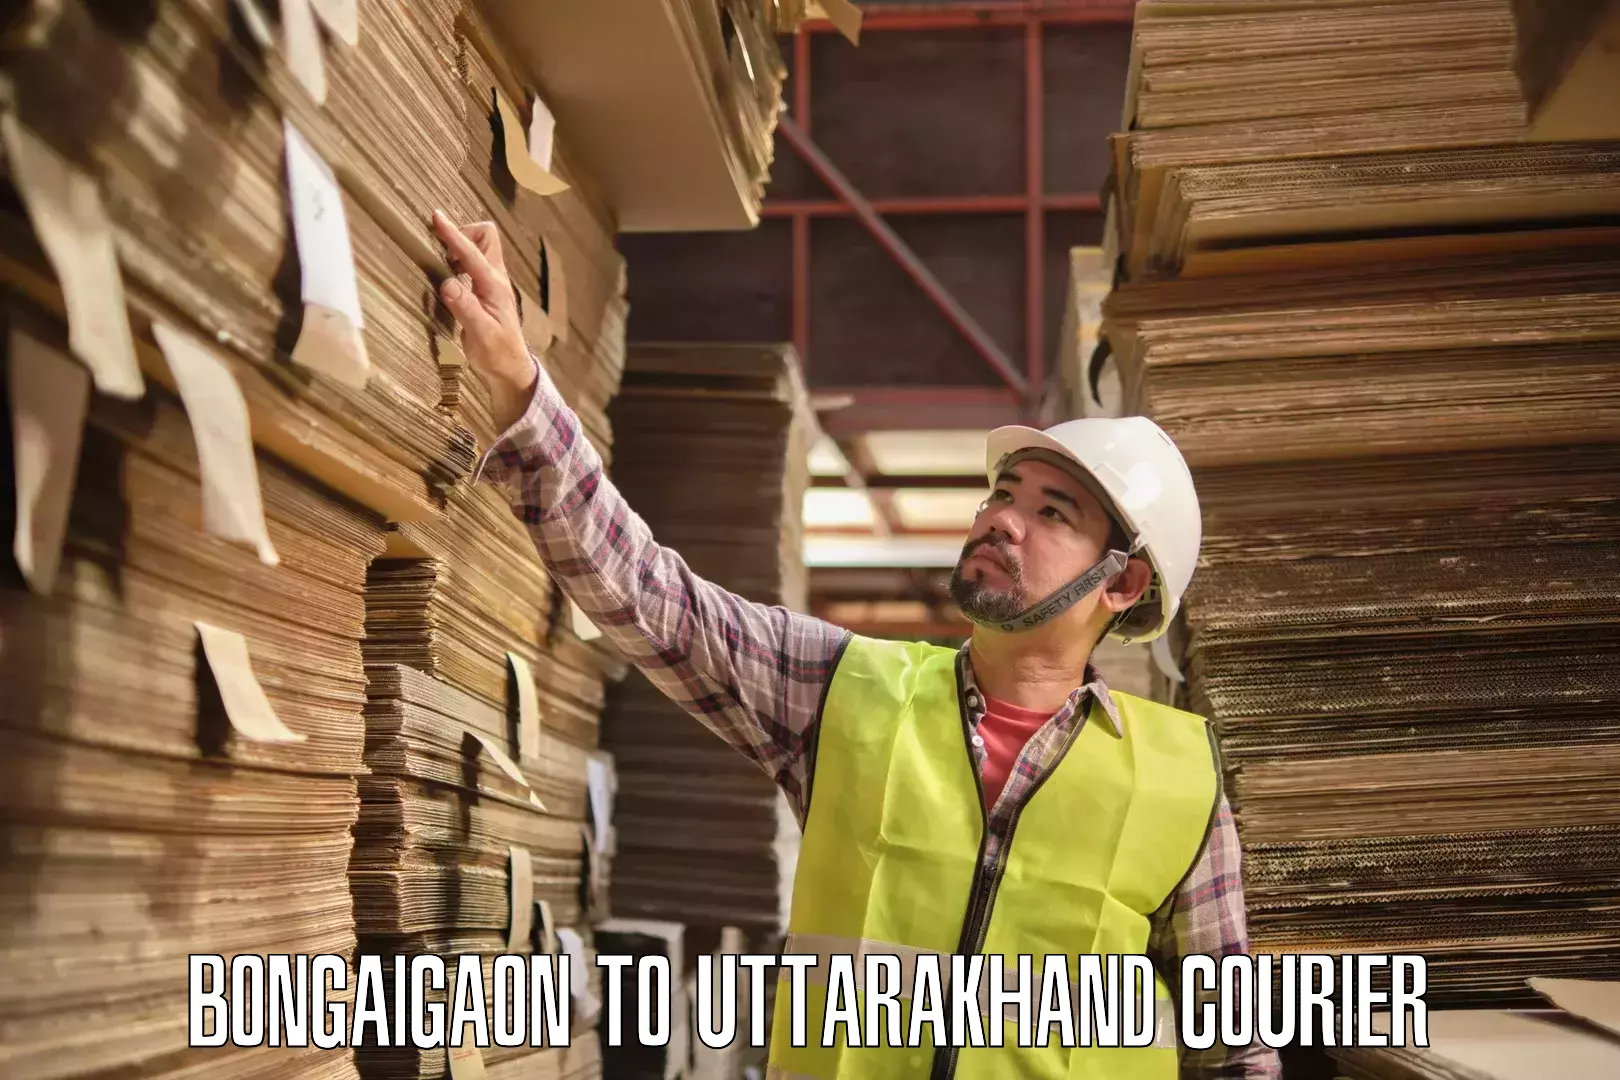 Large-scale shipping solutions Bongaigaon to Uttarakhand